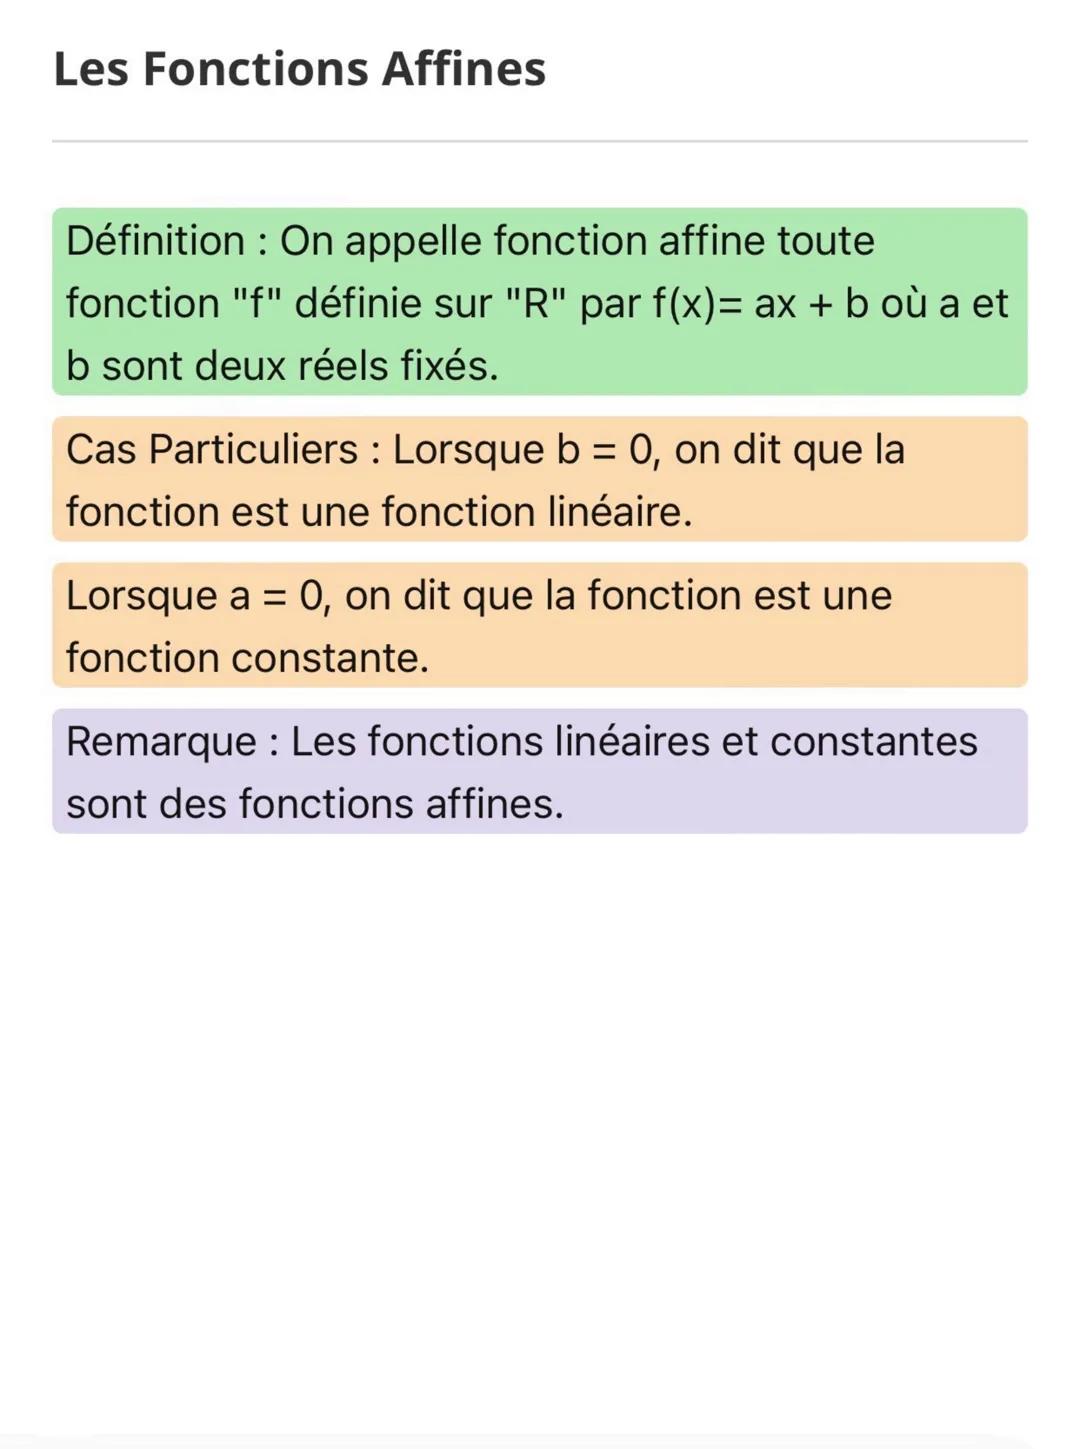 Les Fonctions Affines
Définition: On appelle fonction affine toute
fonction "f" définie sur "R" par f(x)= ax + b où a et
b sont deux réels f